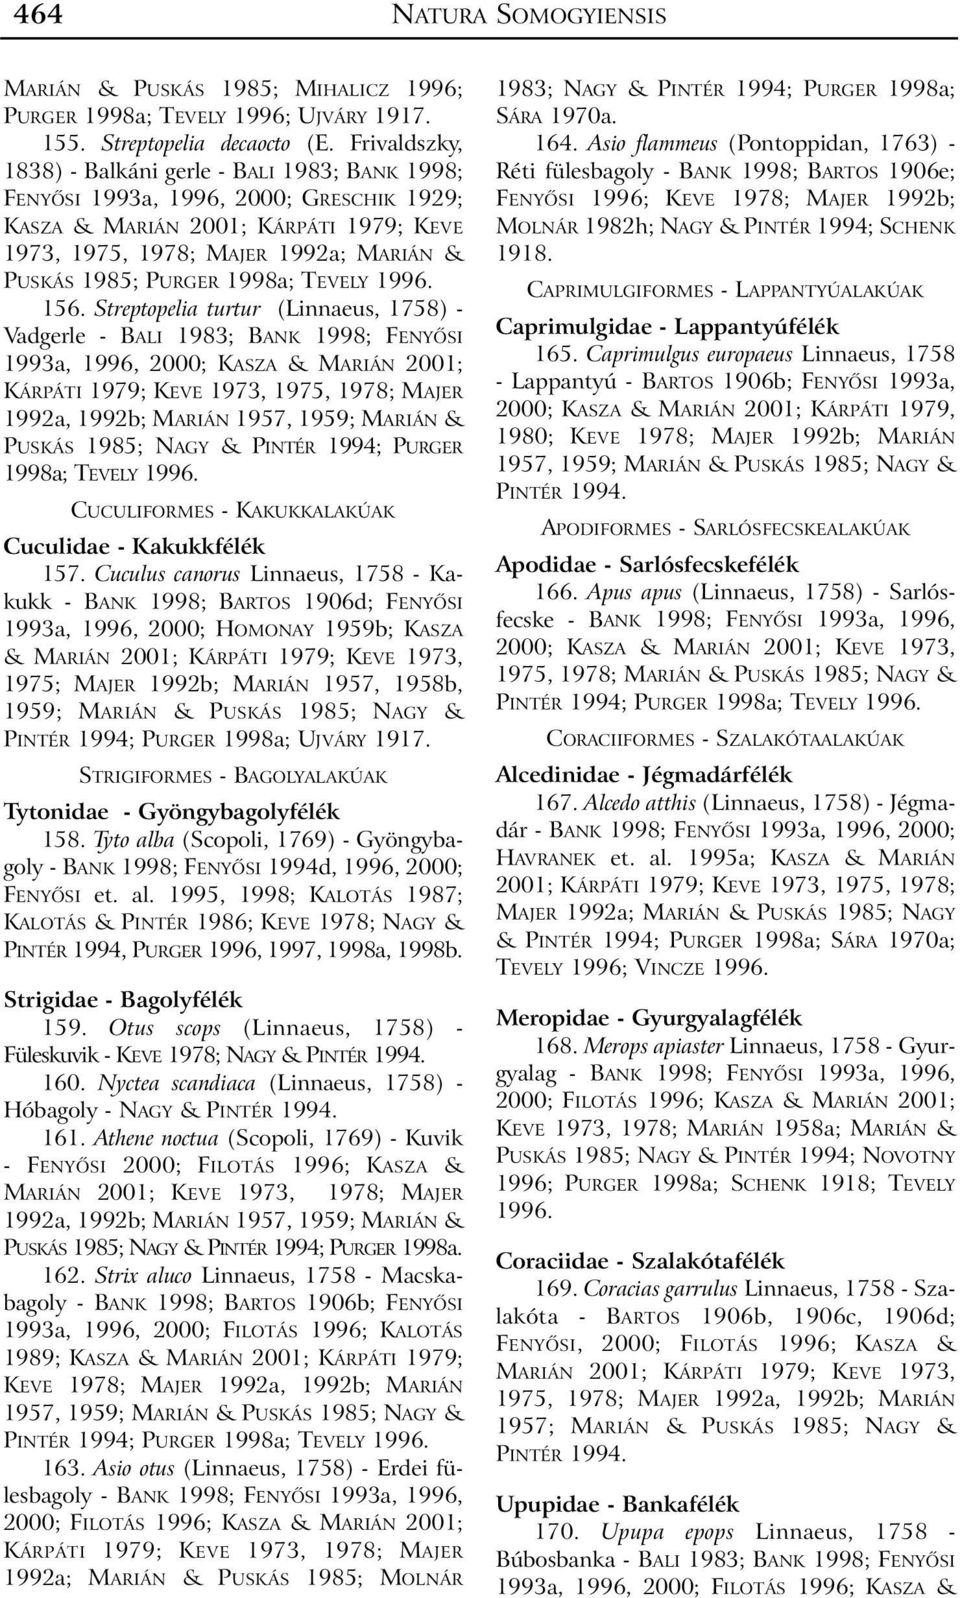 Streptopelia turtur (Linnaeus, 1758) - Vadgerle - BALI 1983; BANK 1998; FENYÕSI 1993a, 1996, 2000; KASZA & MARIÁN 2001; 1992a, 1992b; MARIÁN 1957, 1959; MARIÁN & PUSKÁS 1985; NAGY & PINTÉR 1994;